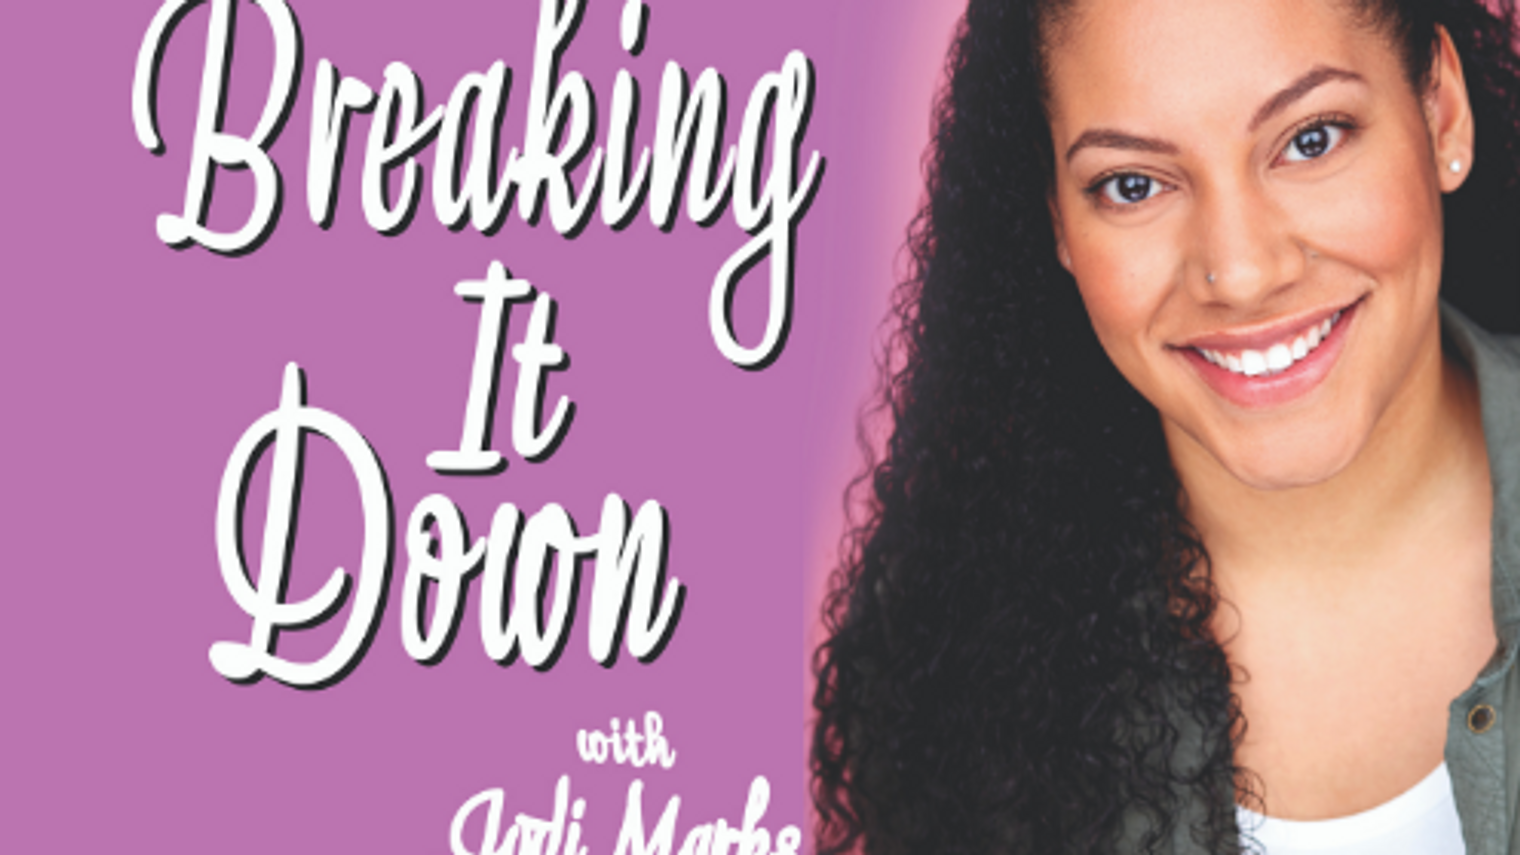 Breaking it Down with Jodi Marks